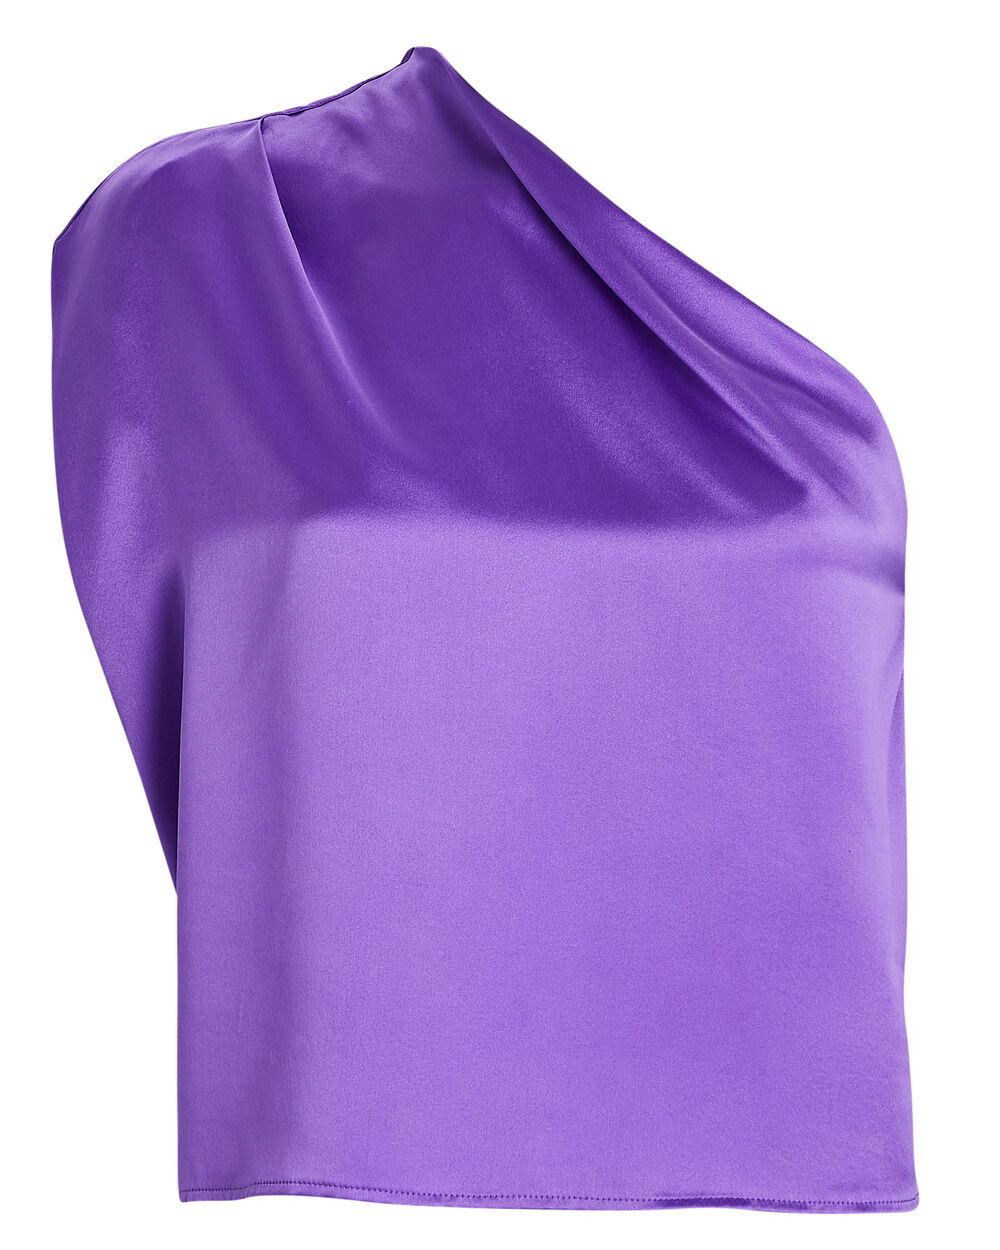 The Sei Silk Bra Top in Purple